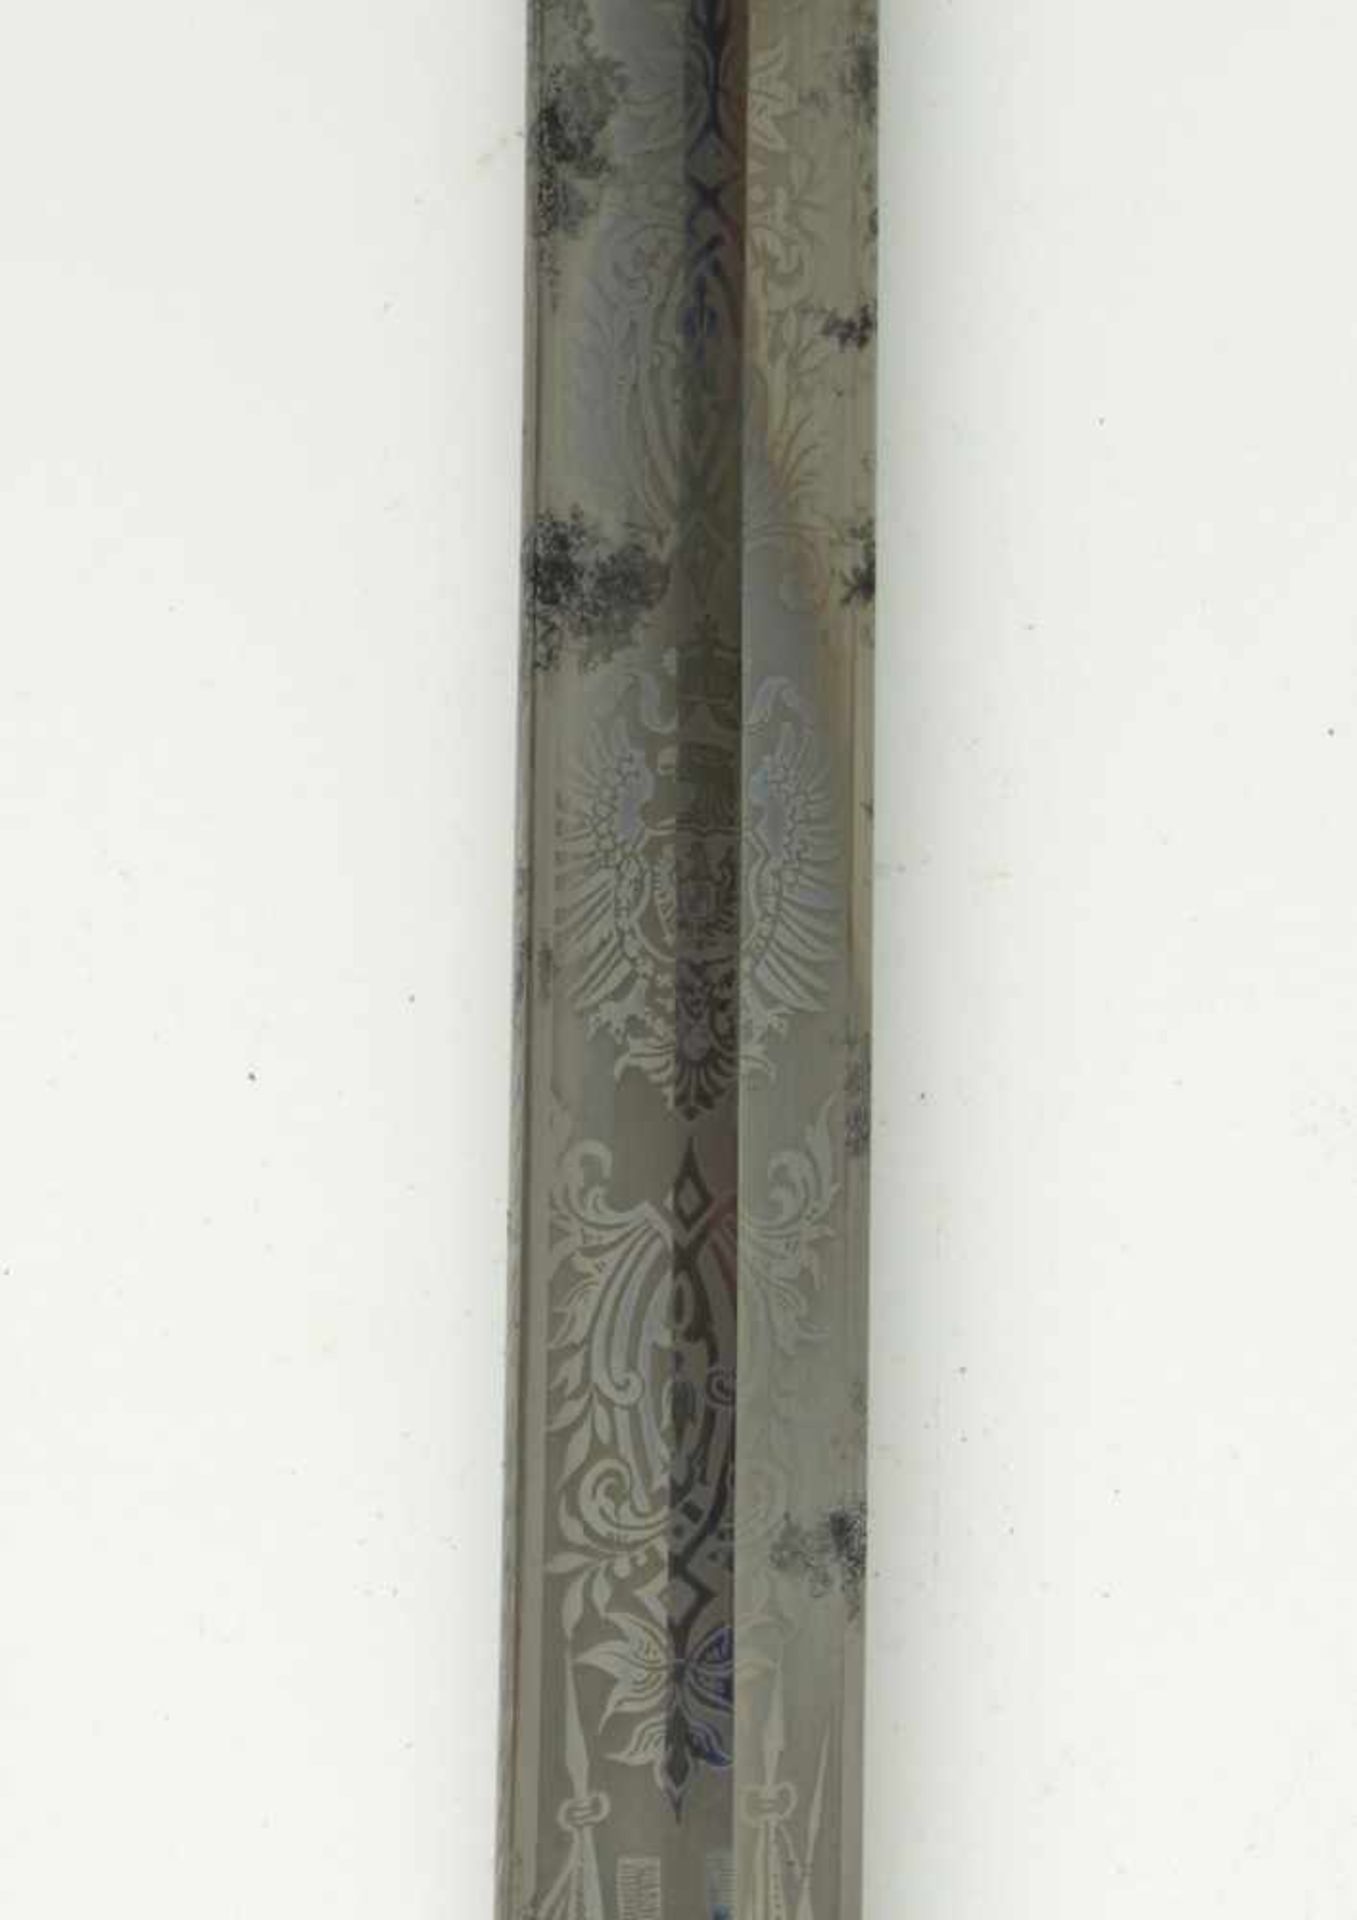 Füsilier-Offizierssäbel, M 1826. Messinggefäß mit Rochenhautgriff und Silberdrahtwicklung, - Bild 2 aus 4